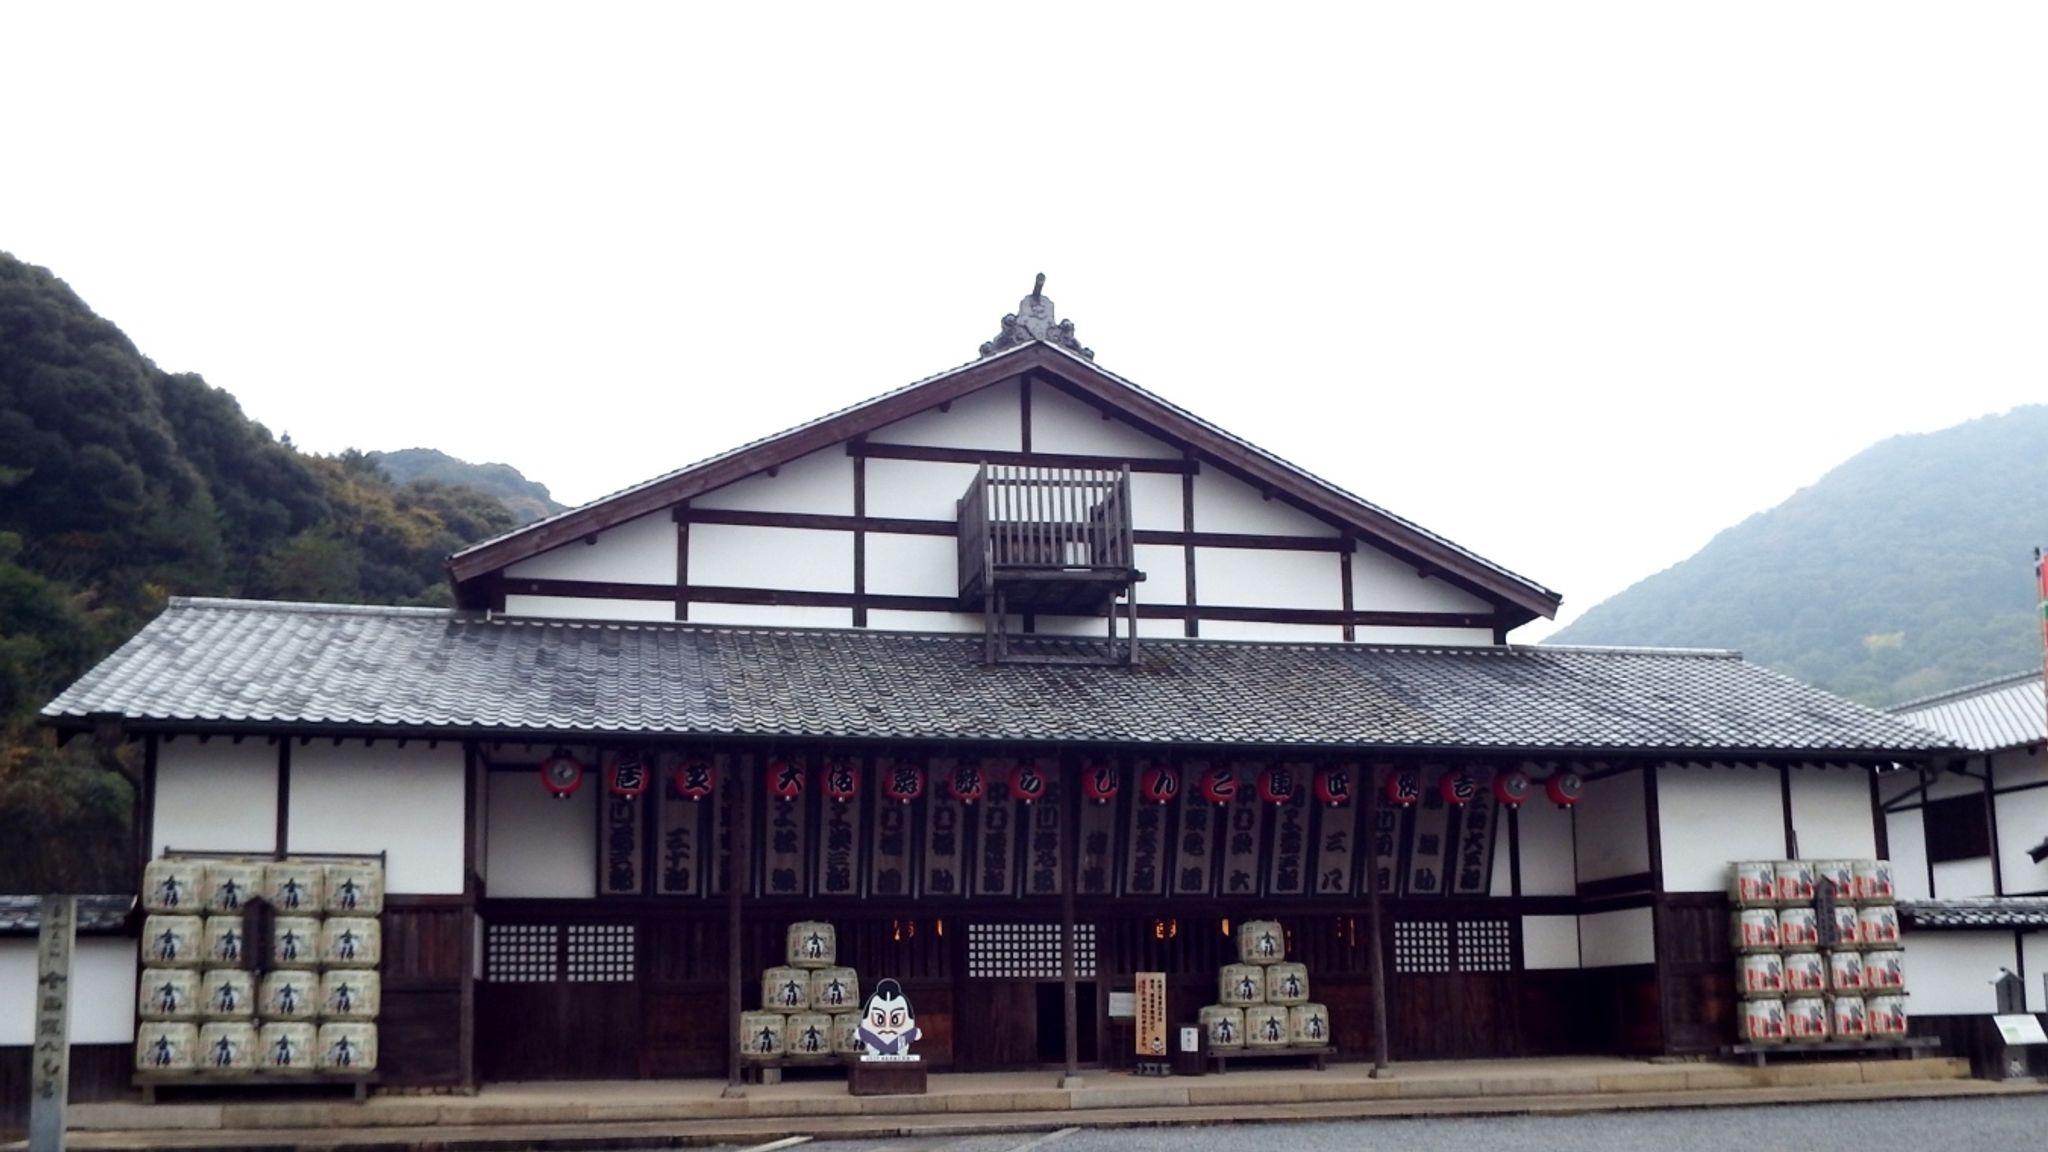  Konpira Grand Theatre in Kotohira